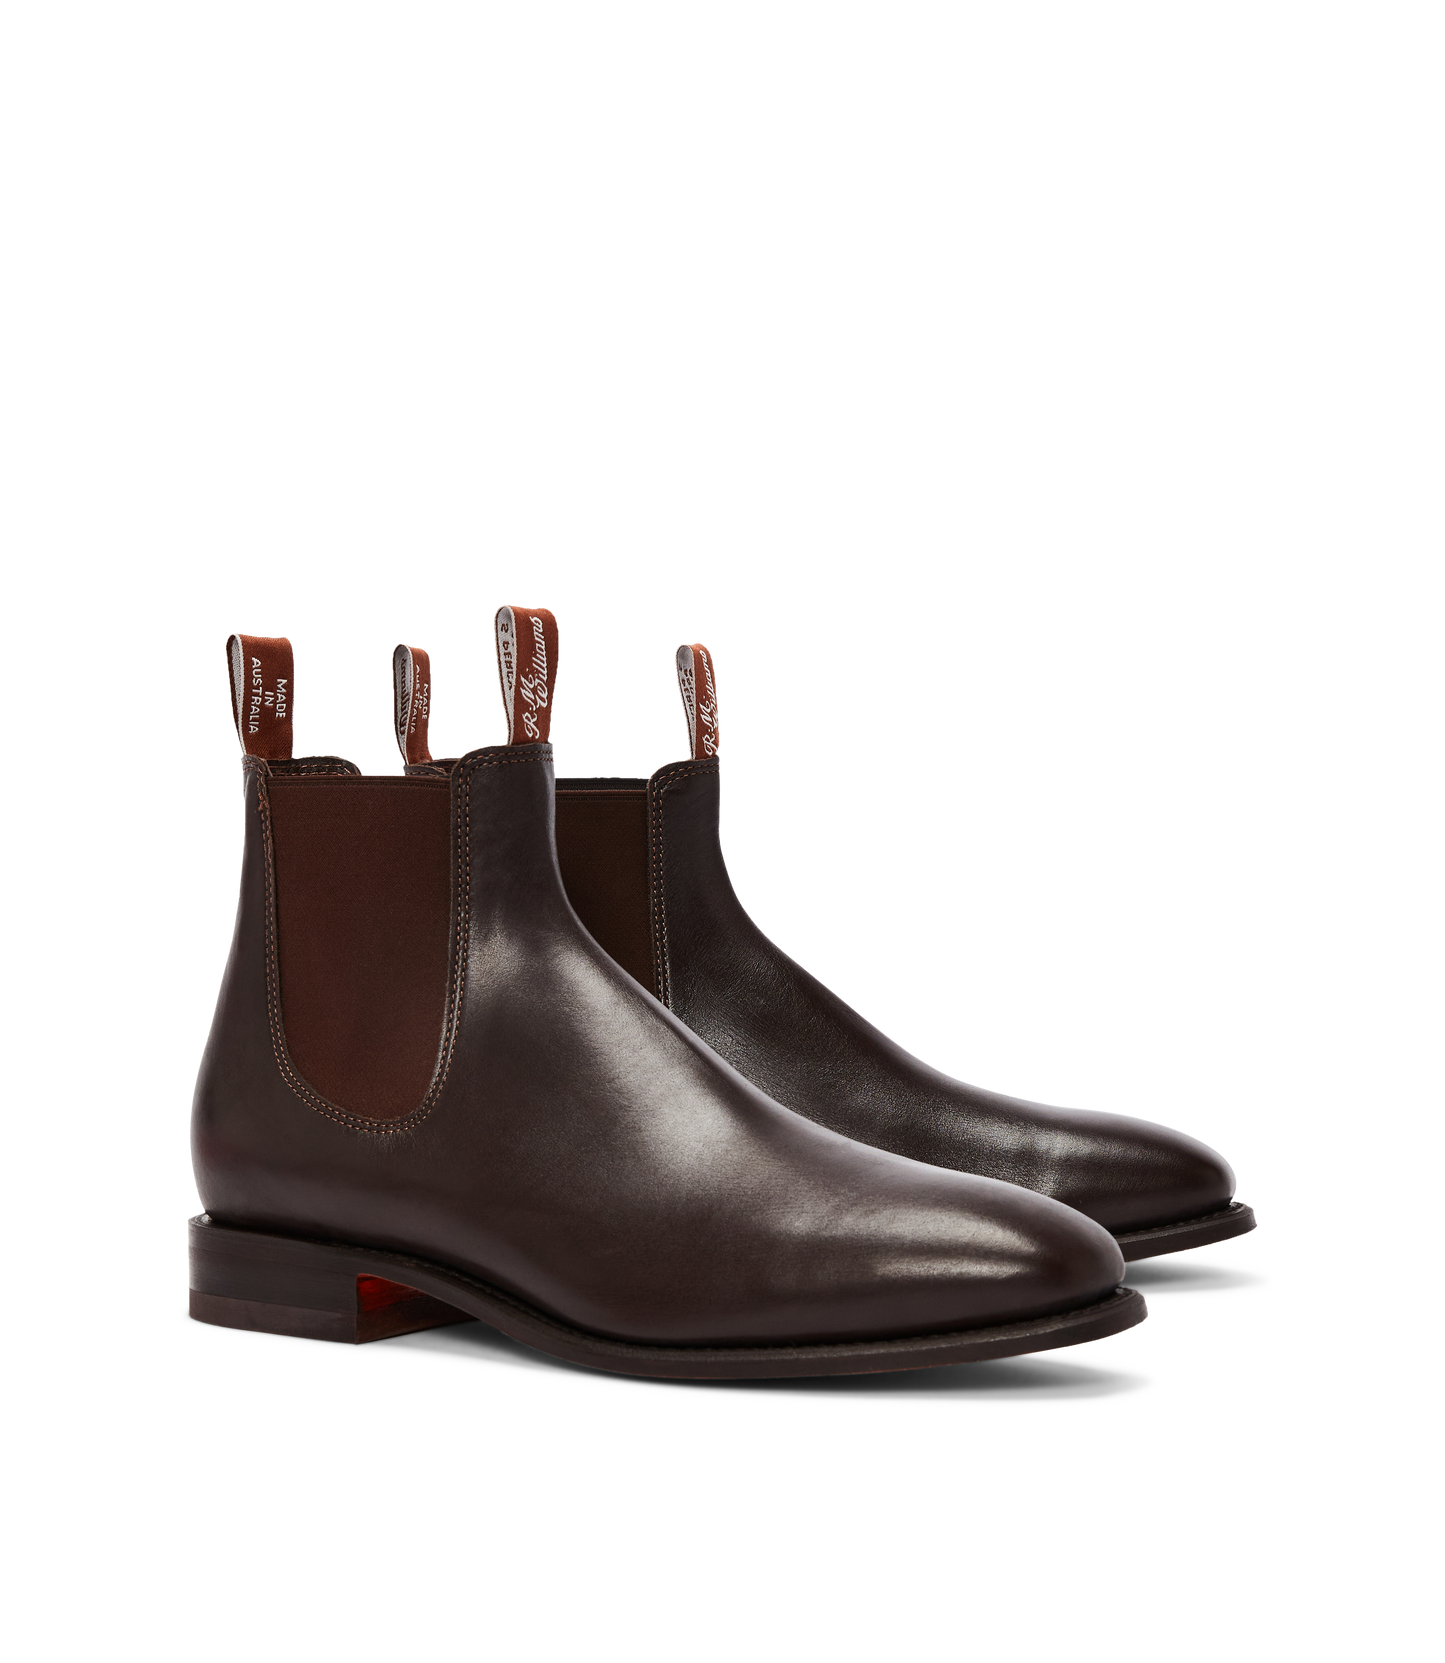 Craftsman boot - Kangaroo leather